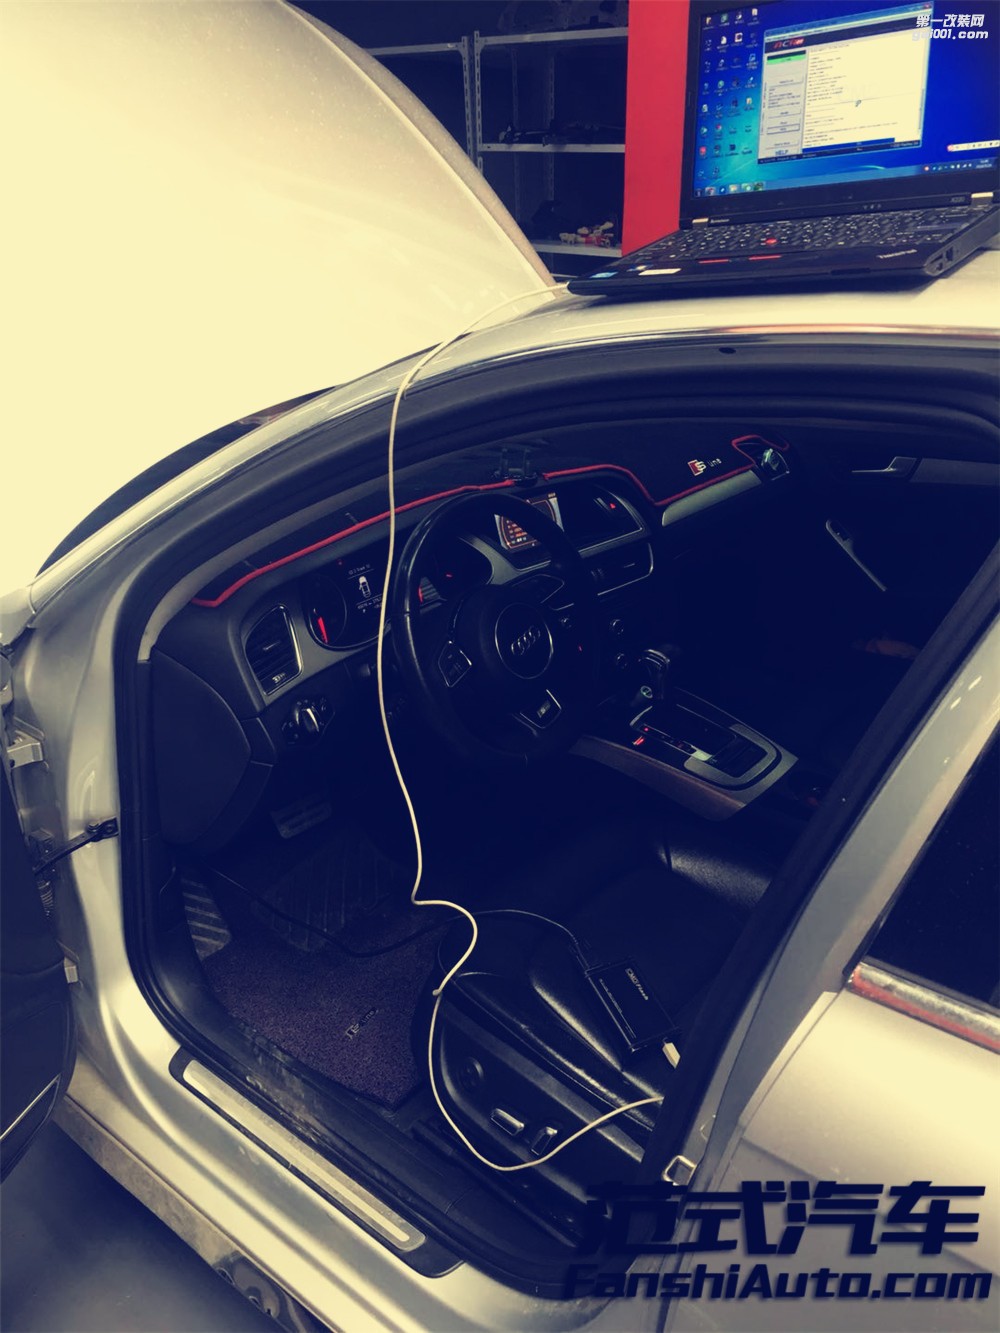 【酷炫】奥迪A4L 2.0T 刷ecu动力升级 范式汽车更稳定更激进！